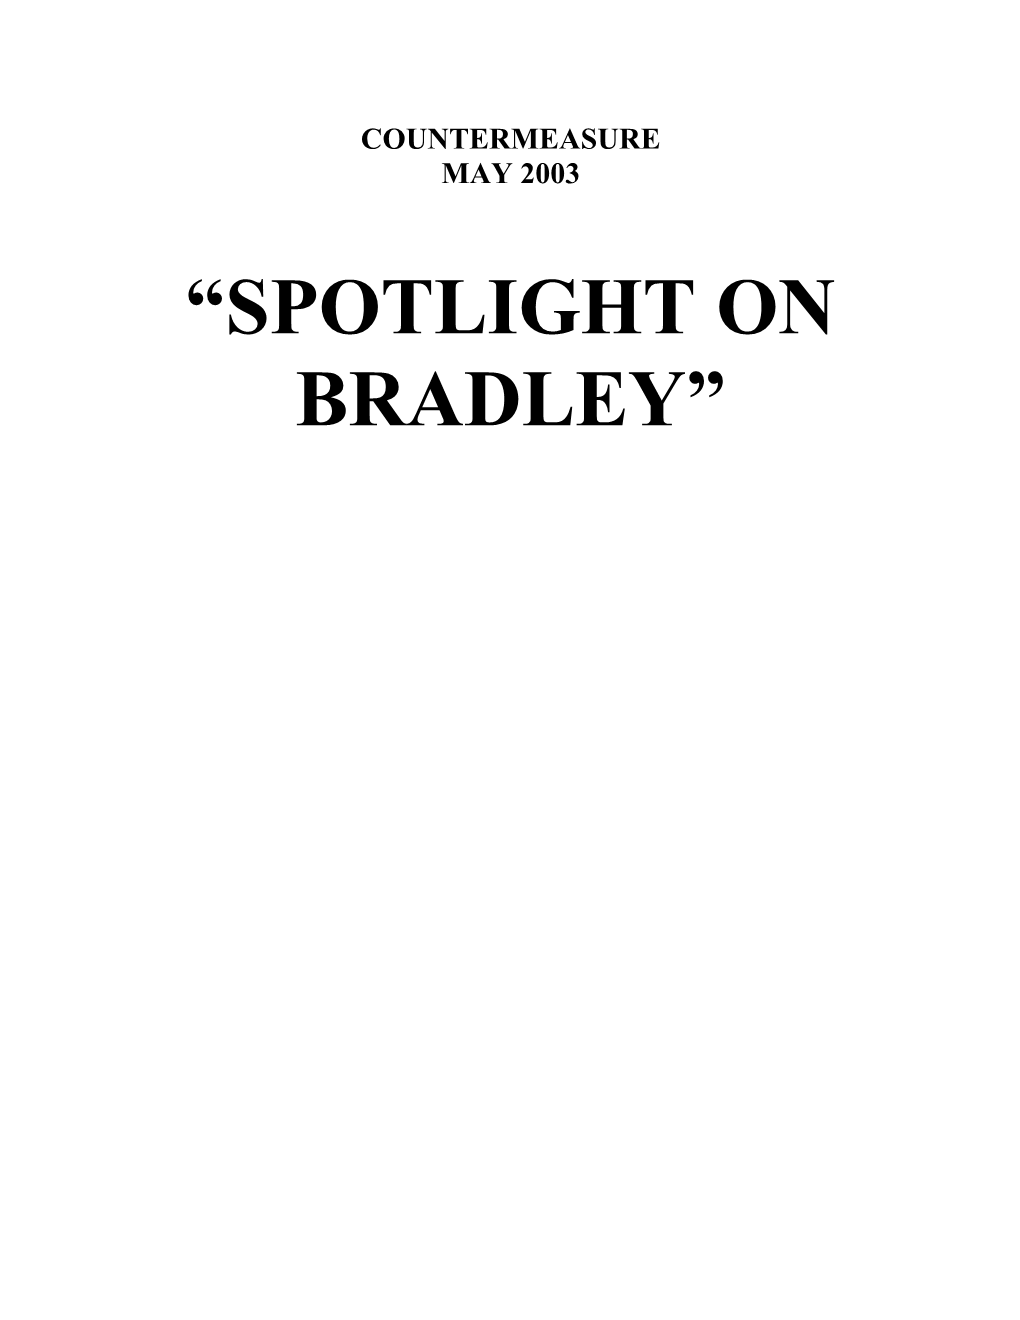 Spotlight on Bradley